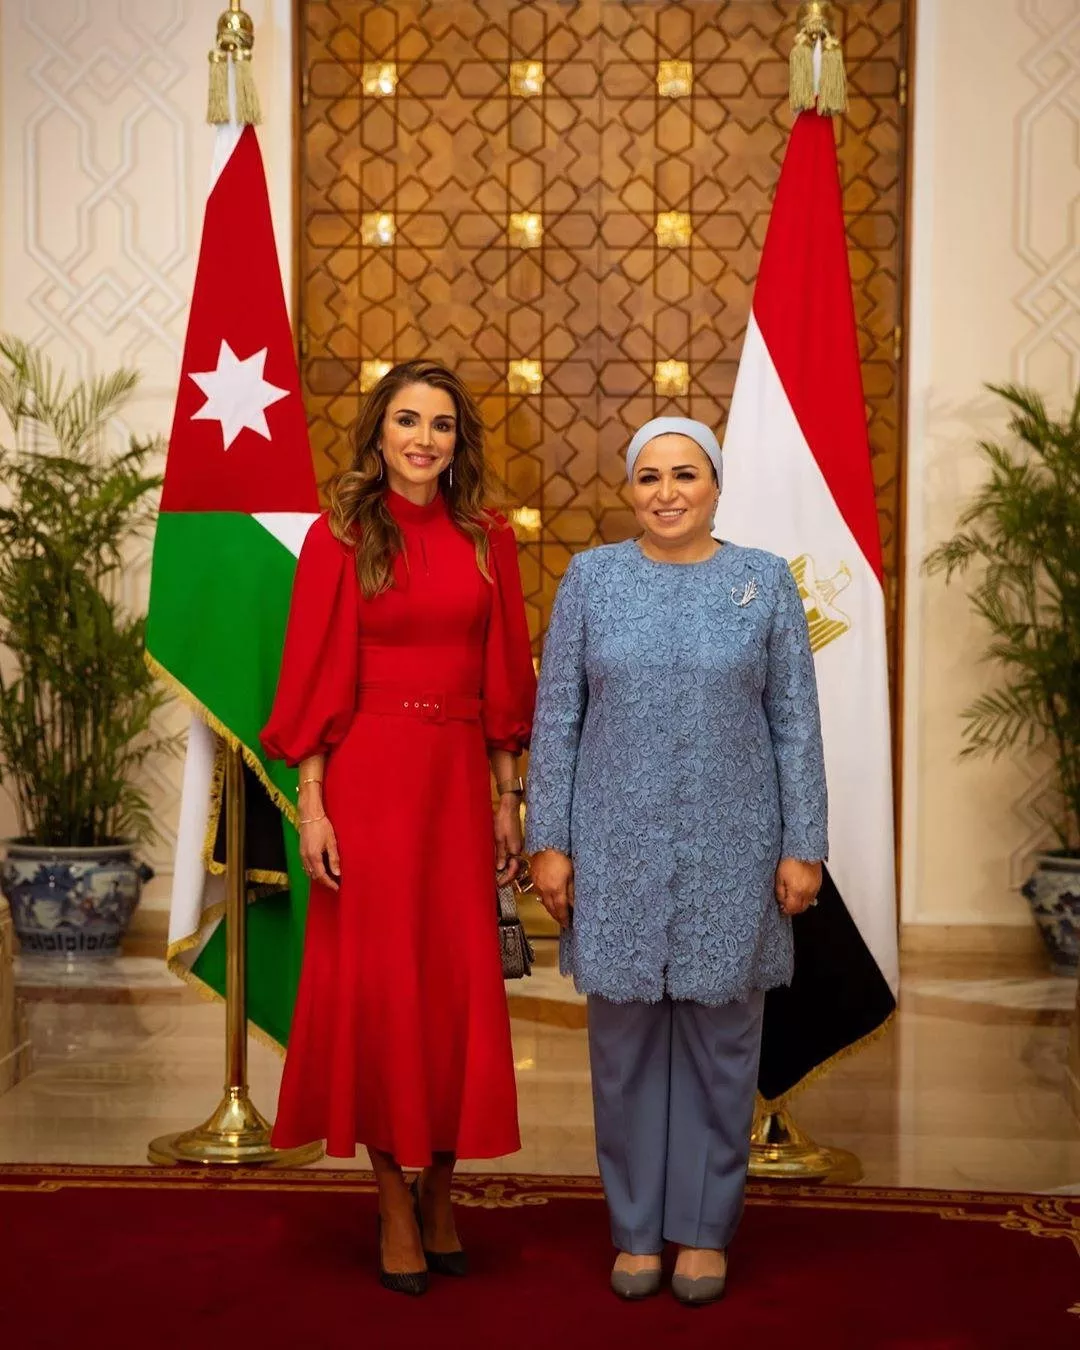 الملكة رانيا في 3 إطلالات مختلفة هذا الأسبوع... أنيقة وراقية كالعادة!